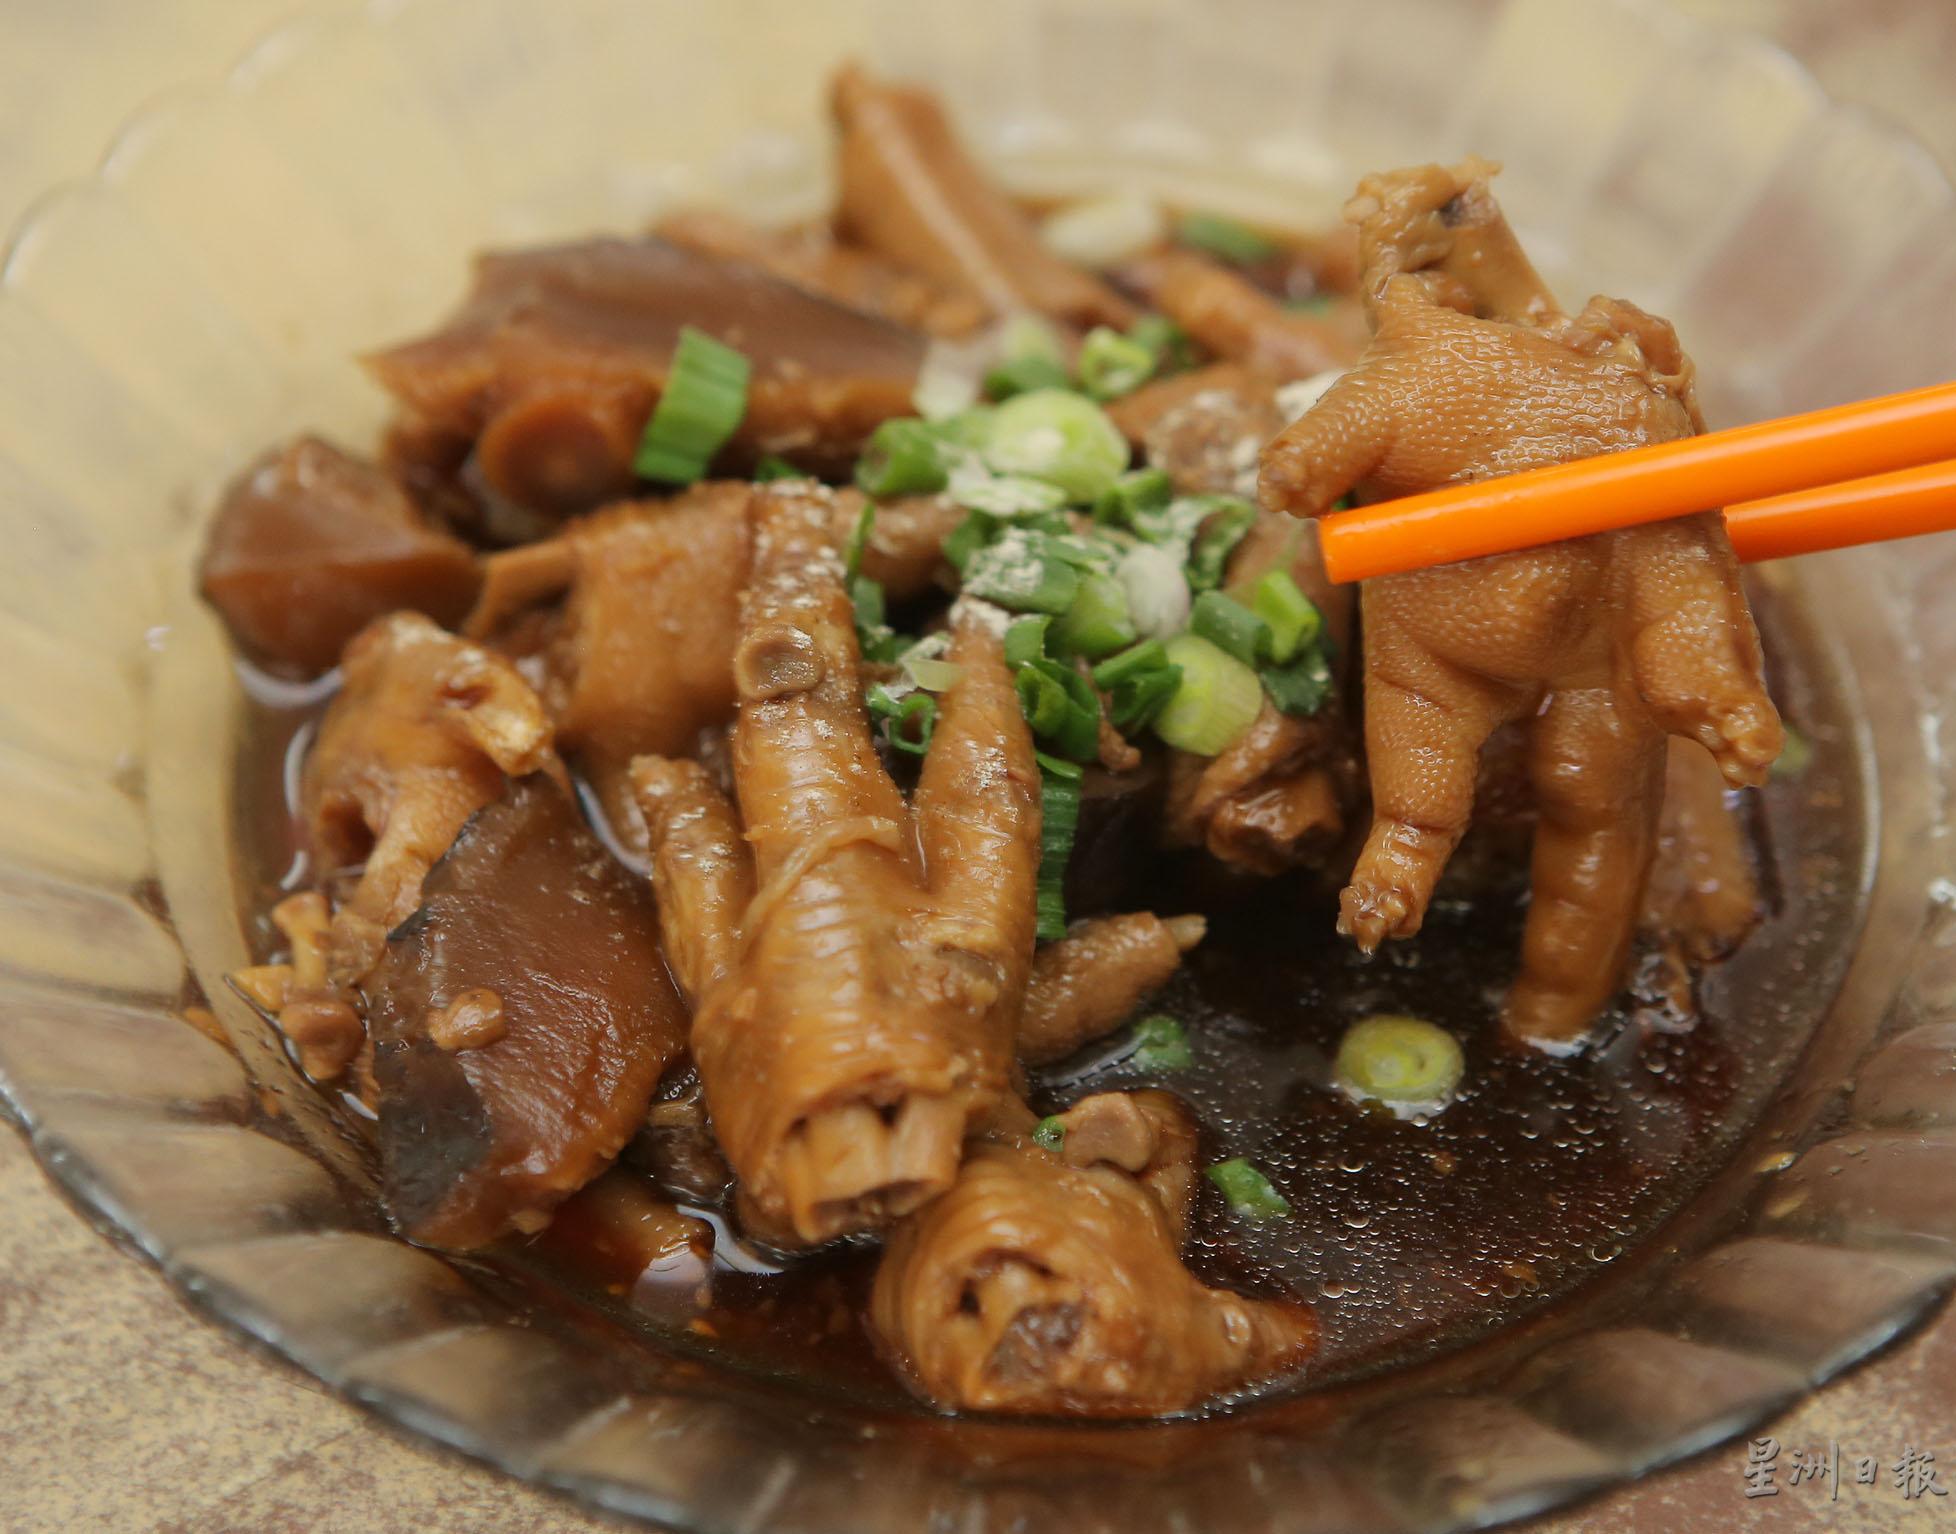 软滑入味的冬菇卤鸡脚大受食客欢迎。